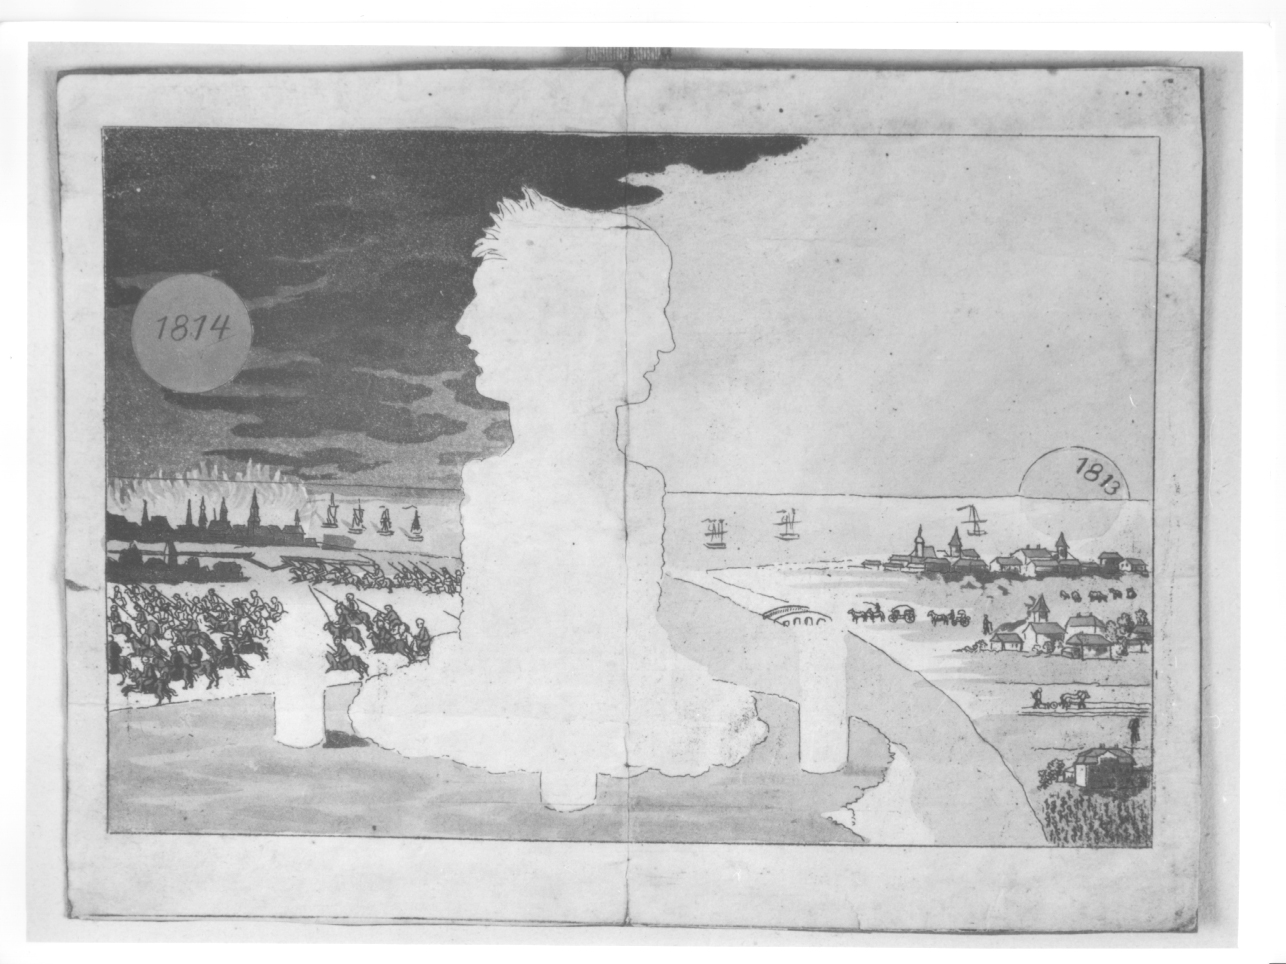 Sguardo al passato e al futuro, agli albori del 1814, ritratto satirico di Napoleone Bonaparte (stampa) - ambito tedesco (primo quarto sec. XIX)